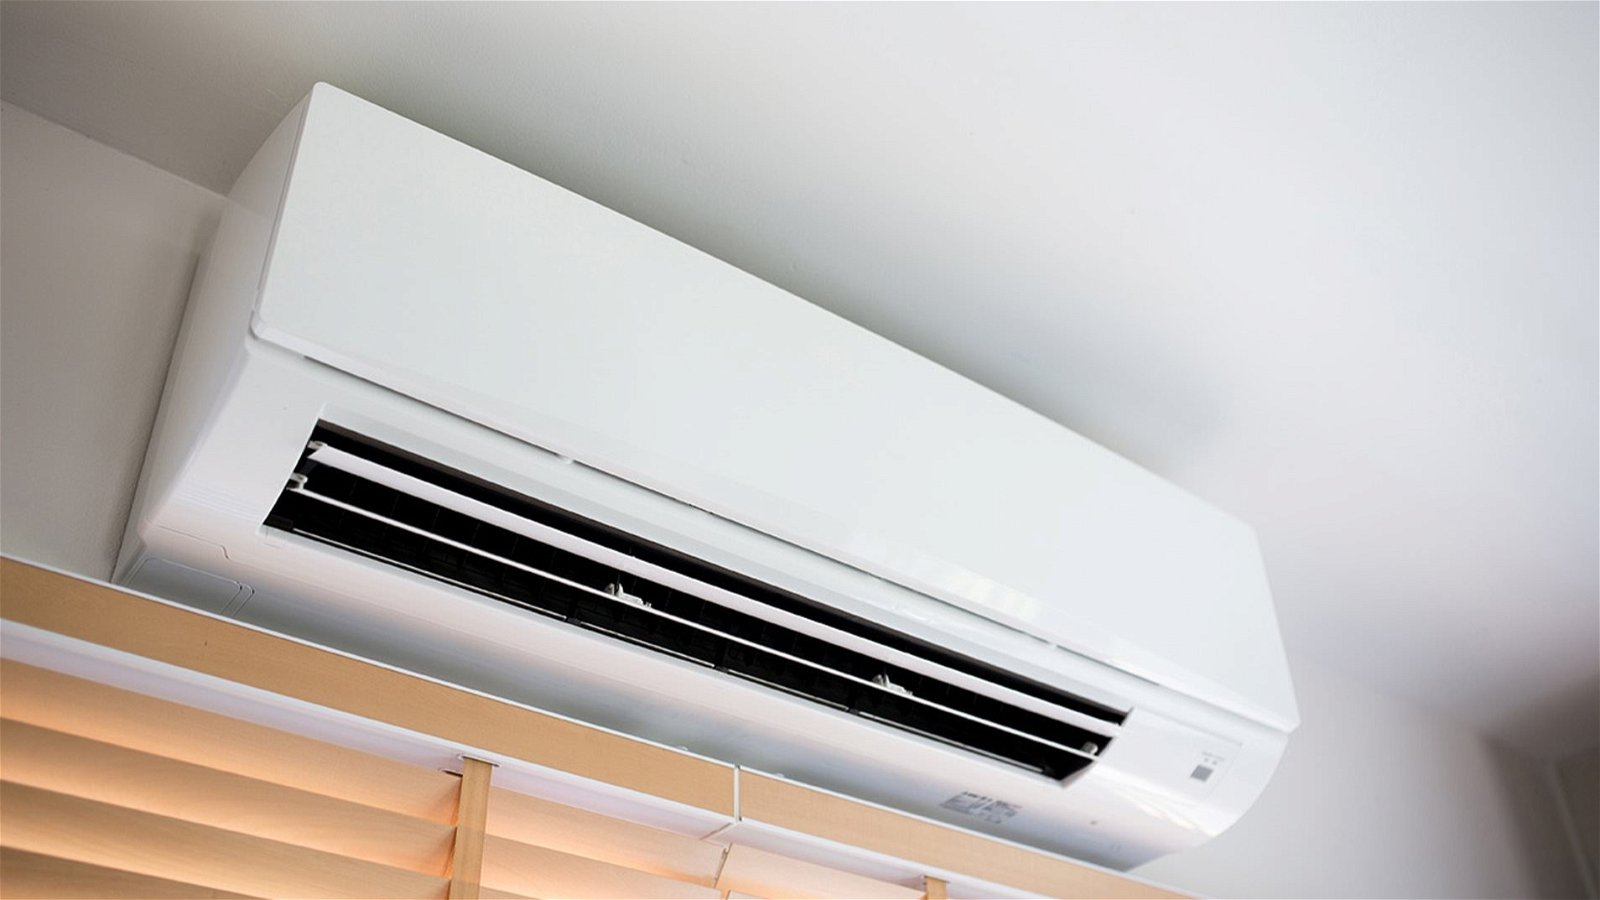 Instalar el aire acondicionado en casa: tipos, y todo lo que necesitas saber